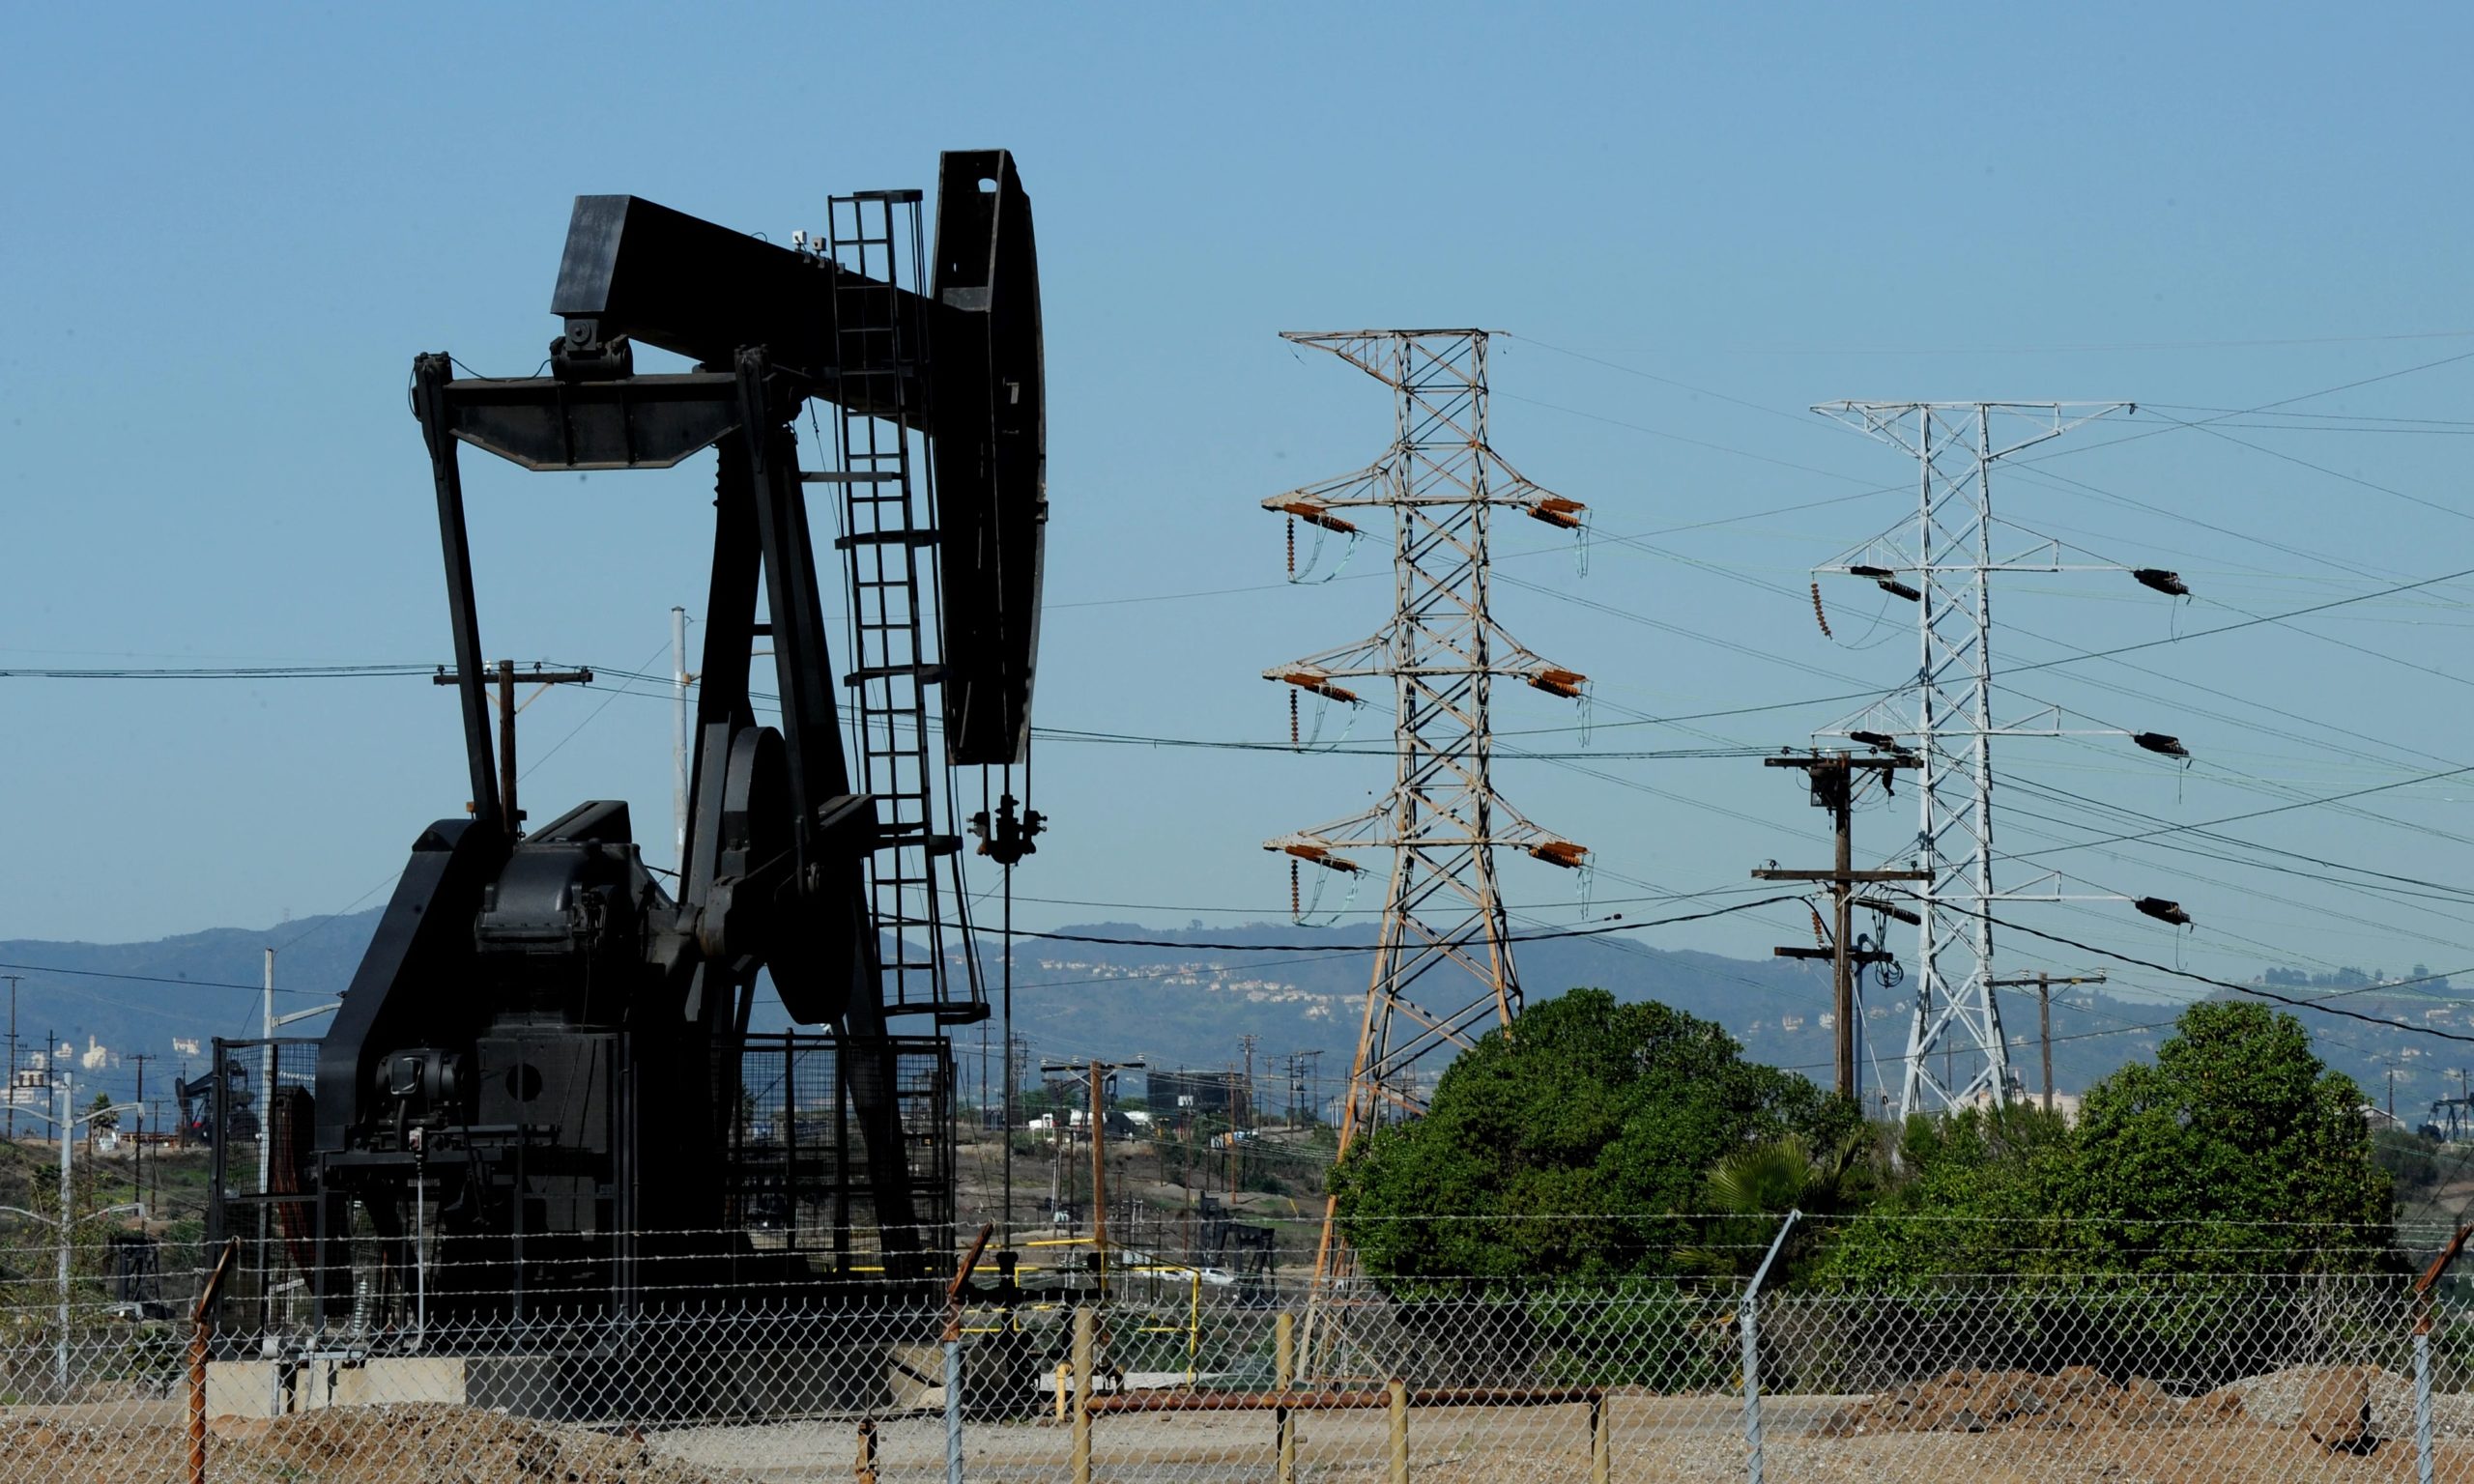 22losb0acca8e c383 4113 82042816ebecbab9 source scaled - Власти Лос-Анджелеса запрещают новые нефтяные скважины